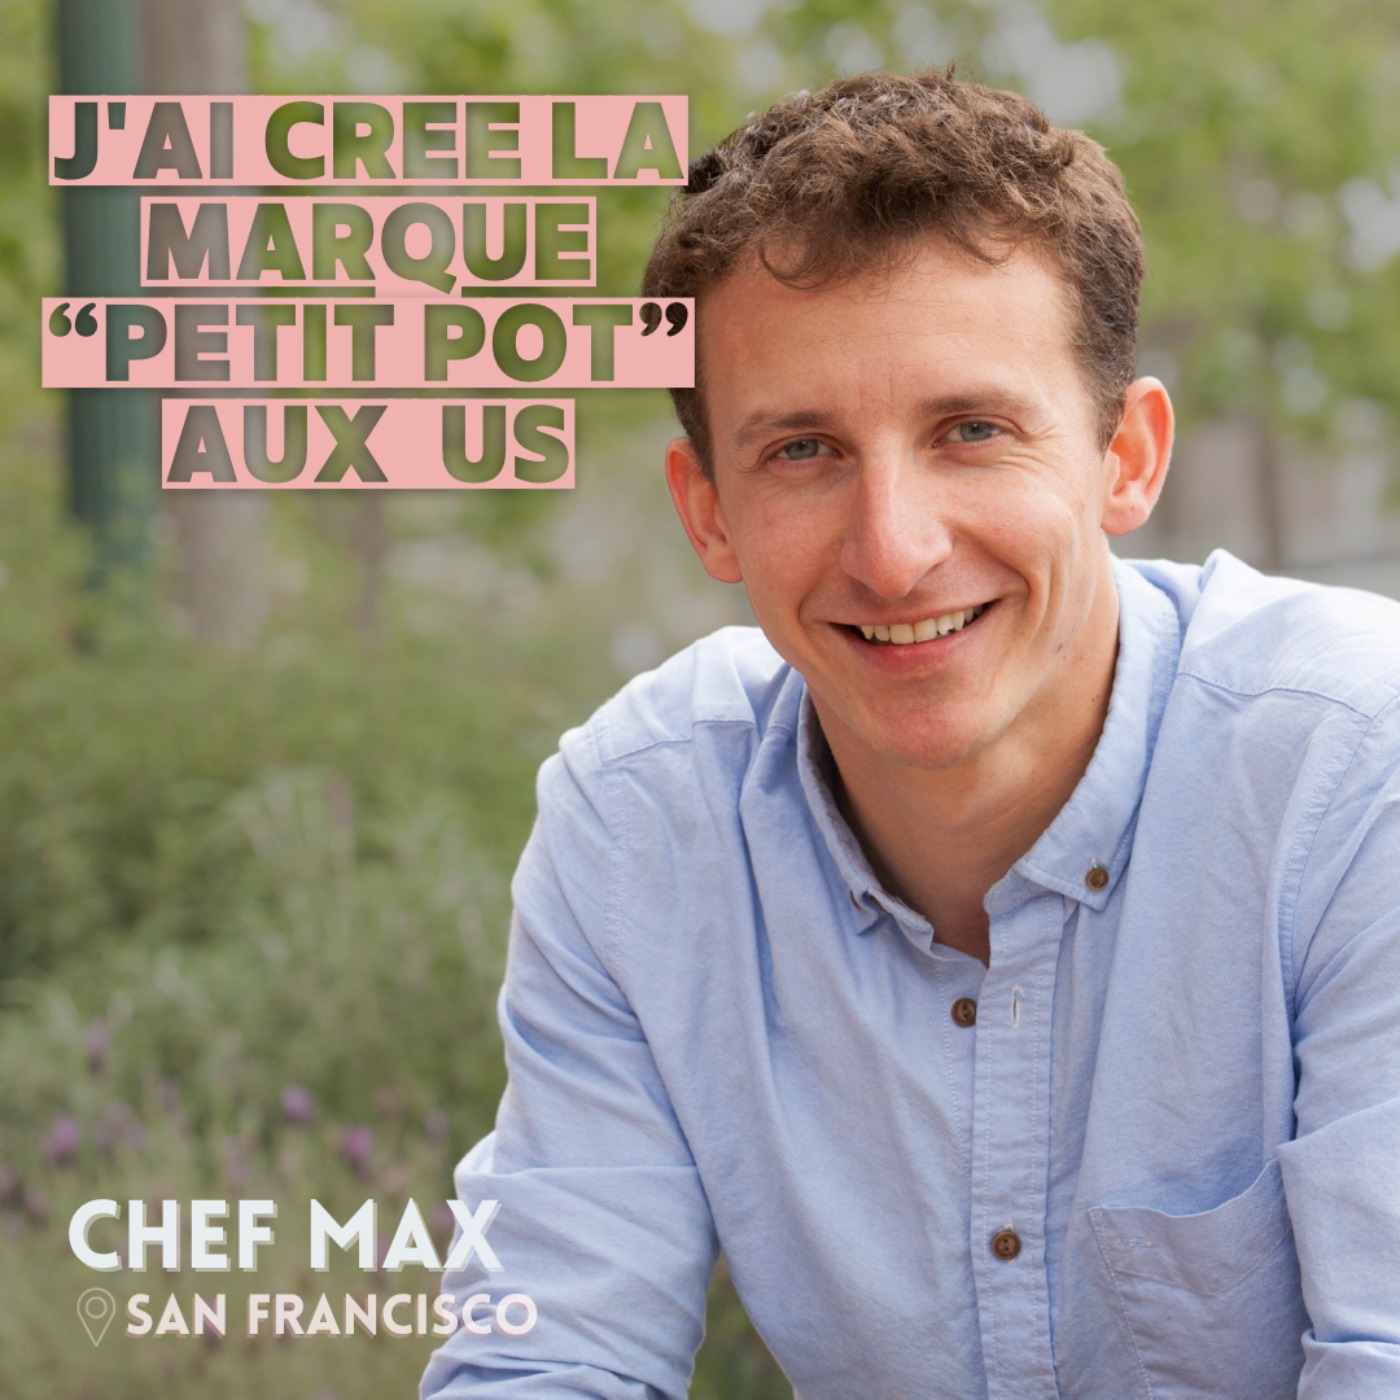 Chef Max (Nouvelle Zélande et USA) : De la patisserie à la création de Petit Pot